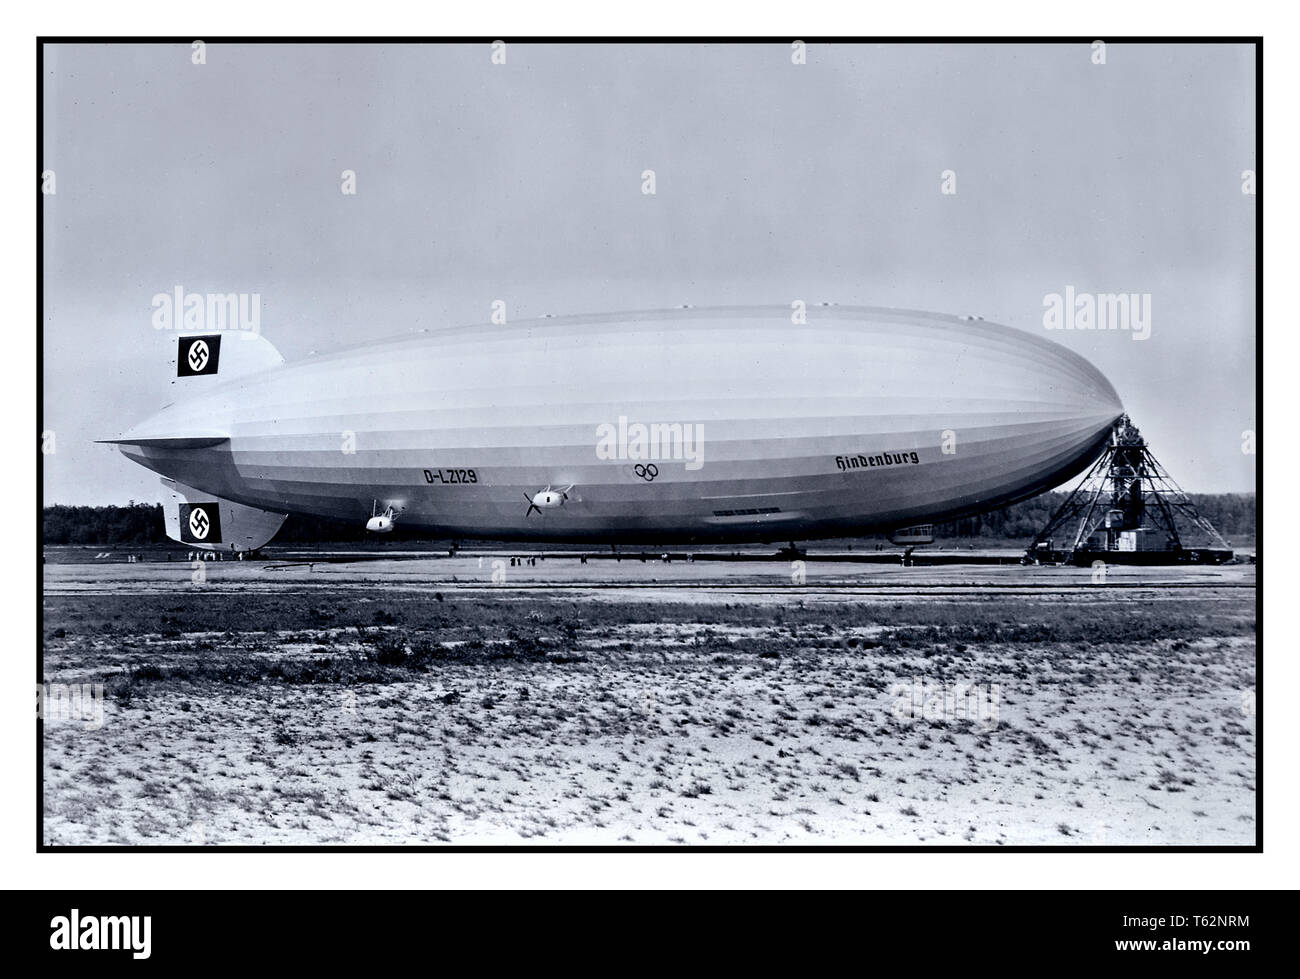 1930 Die NS-Propaganda Bild des LZ-129 Hindenburg mit Hakenkreuz Schwanzflosse, die berüchtigten Zeppelin, in Lakehurst Naval Air Station Amerika USA 1936. Stockfoto